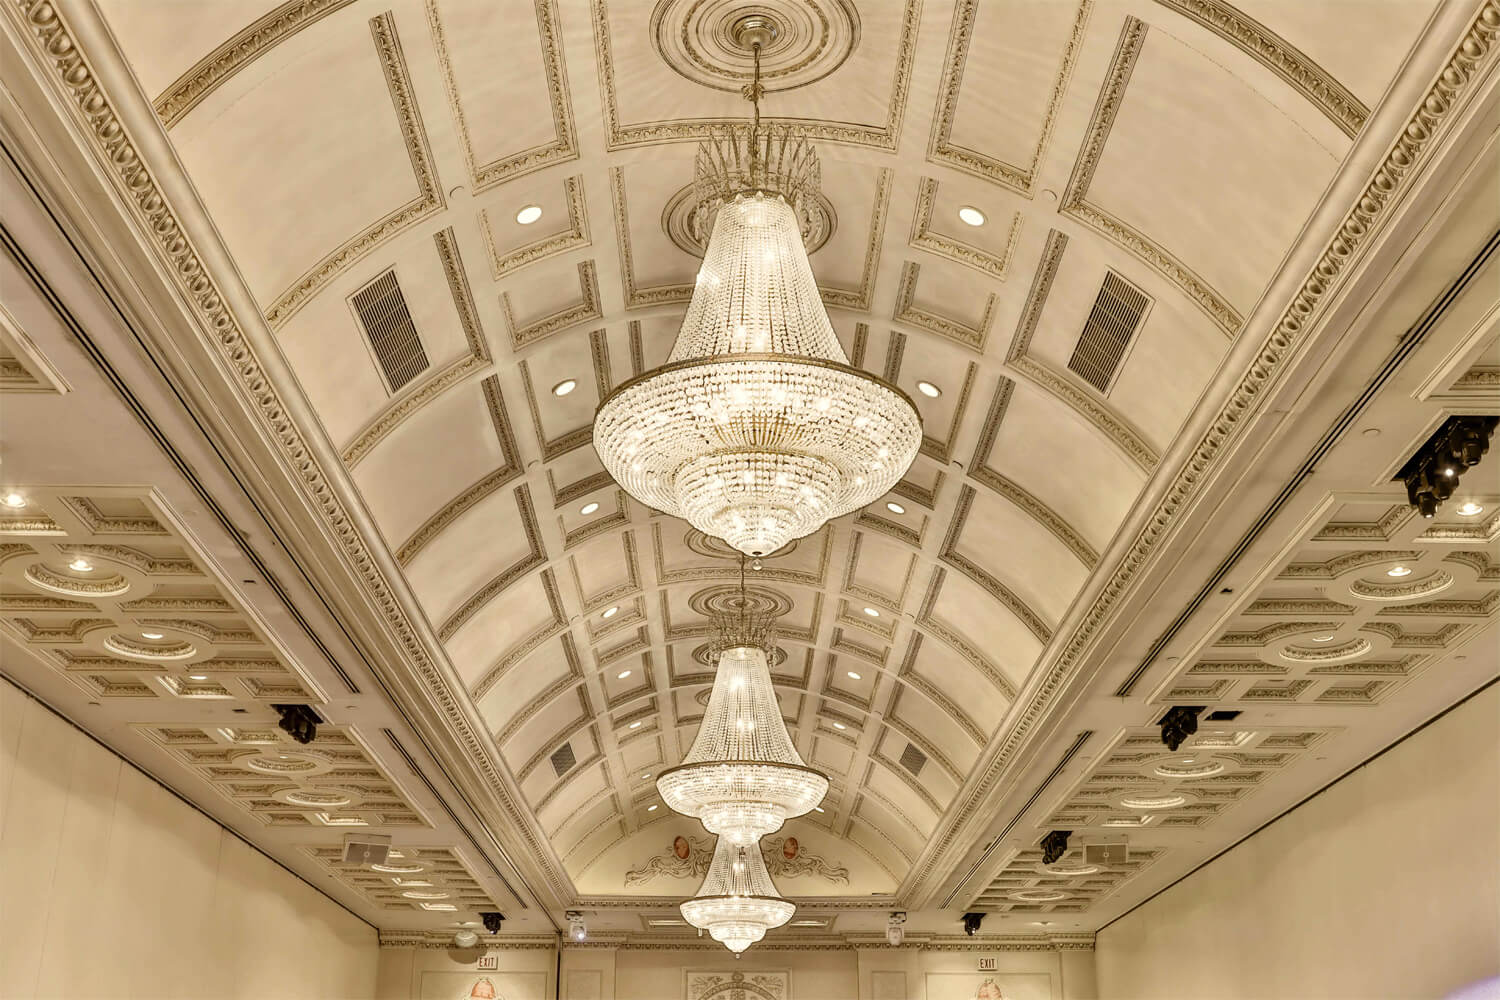 The Venetian Venue's chandeliers